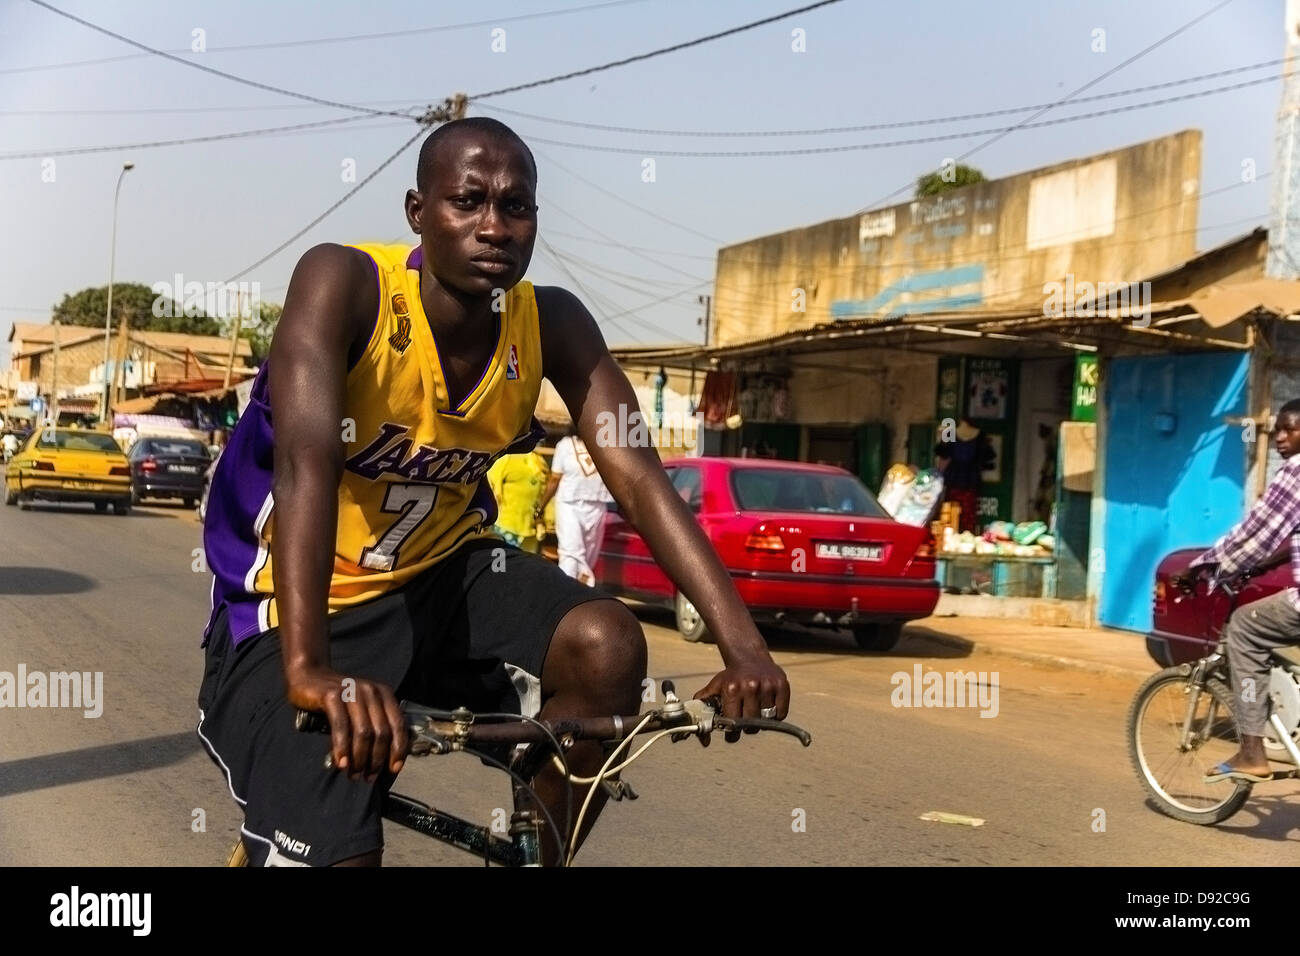 Cycliste avec t-shirt lakers dans une rue de Serrekunda, Gambie Banque D'Images